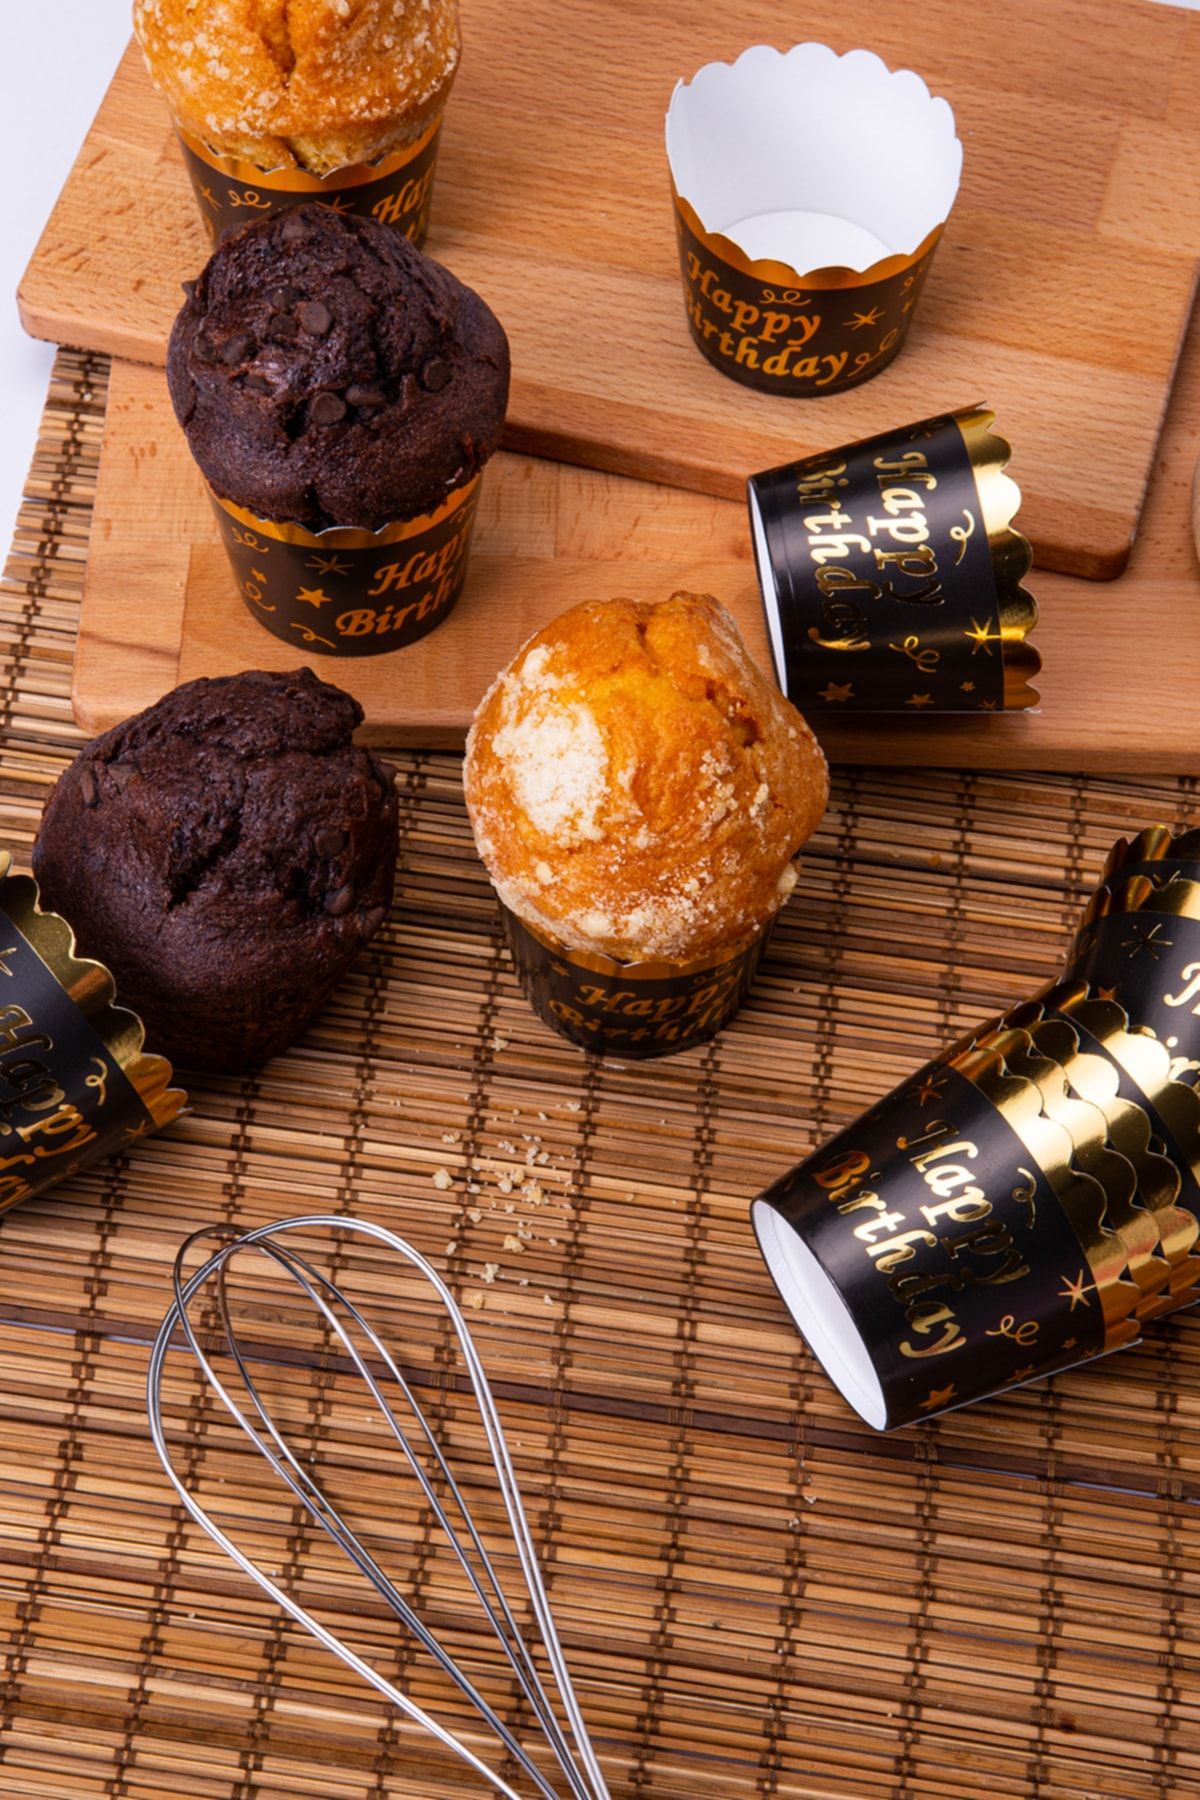 Huzur Party Store Gold Altın Yaldızlı Siyah 12'li Kek Kalıbı Happy Birthday Yazılı Fırında Dağılmayan 6.5x5 Cm Muffin